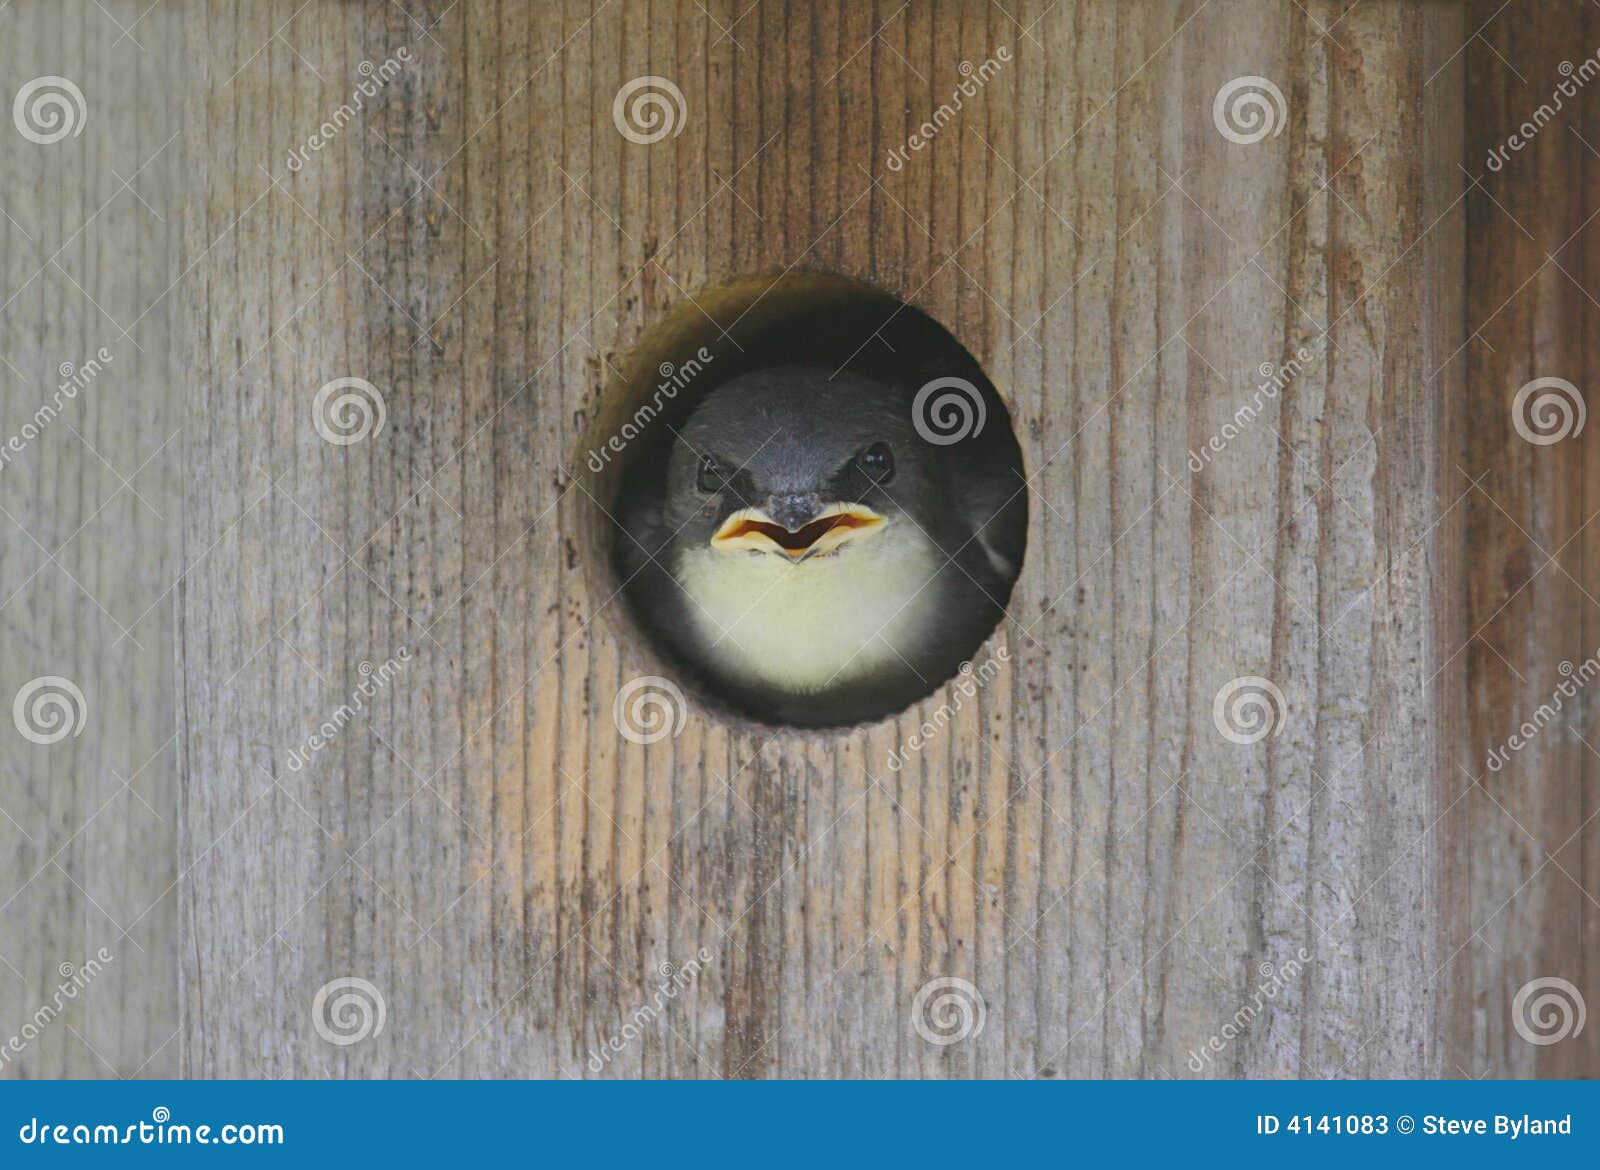 Baby Tree Swallow (tachycineta bicolor) in a bird house.